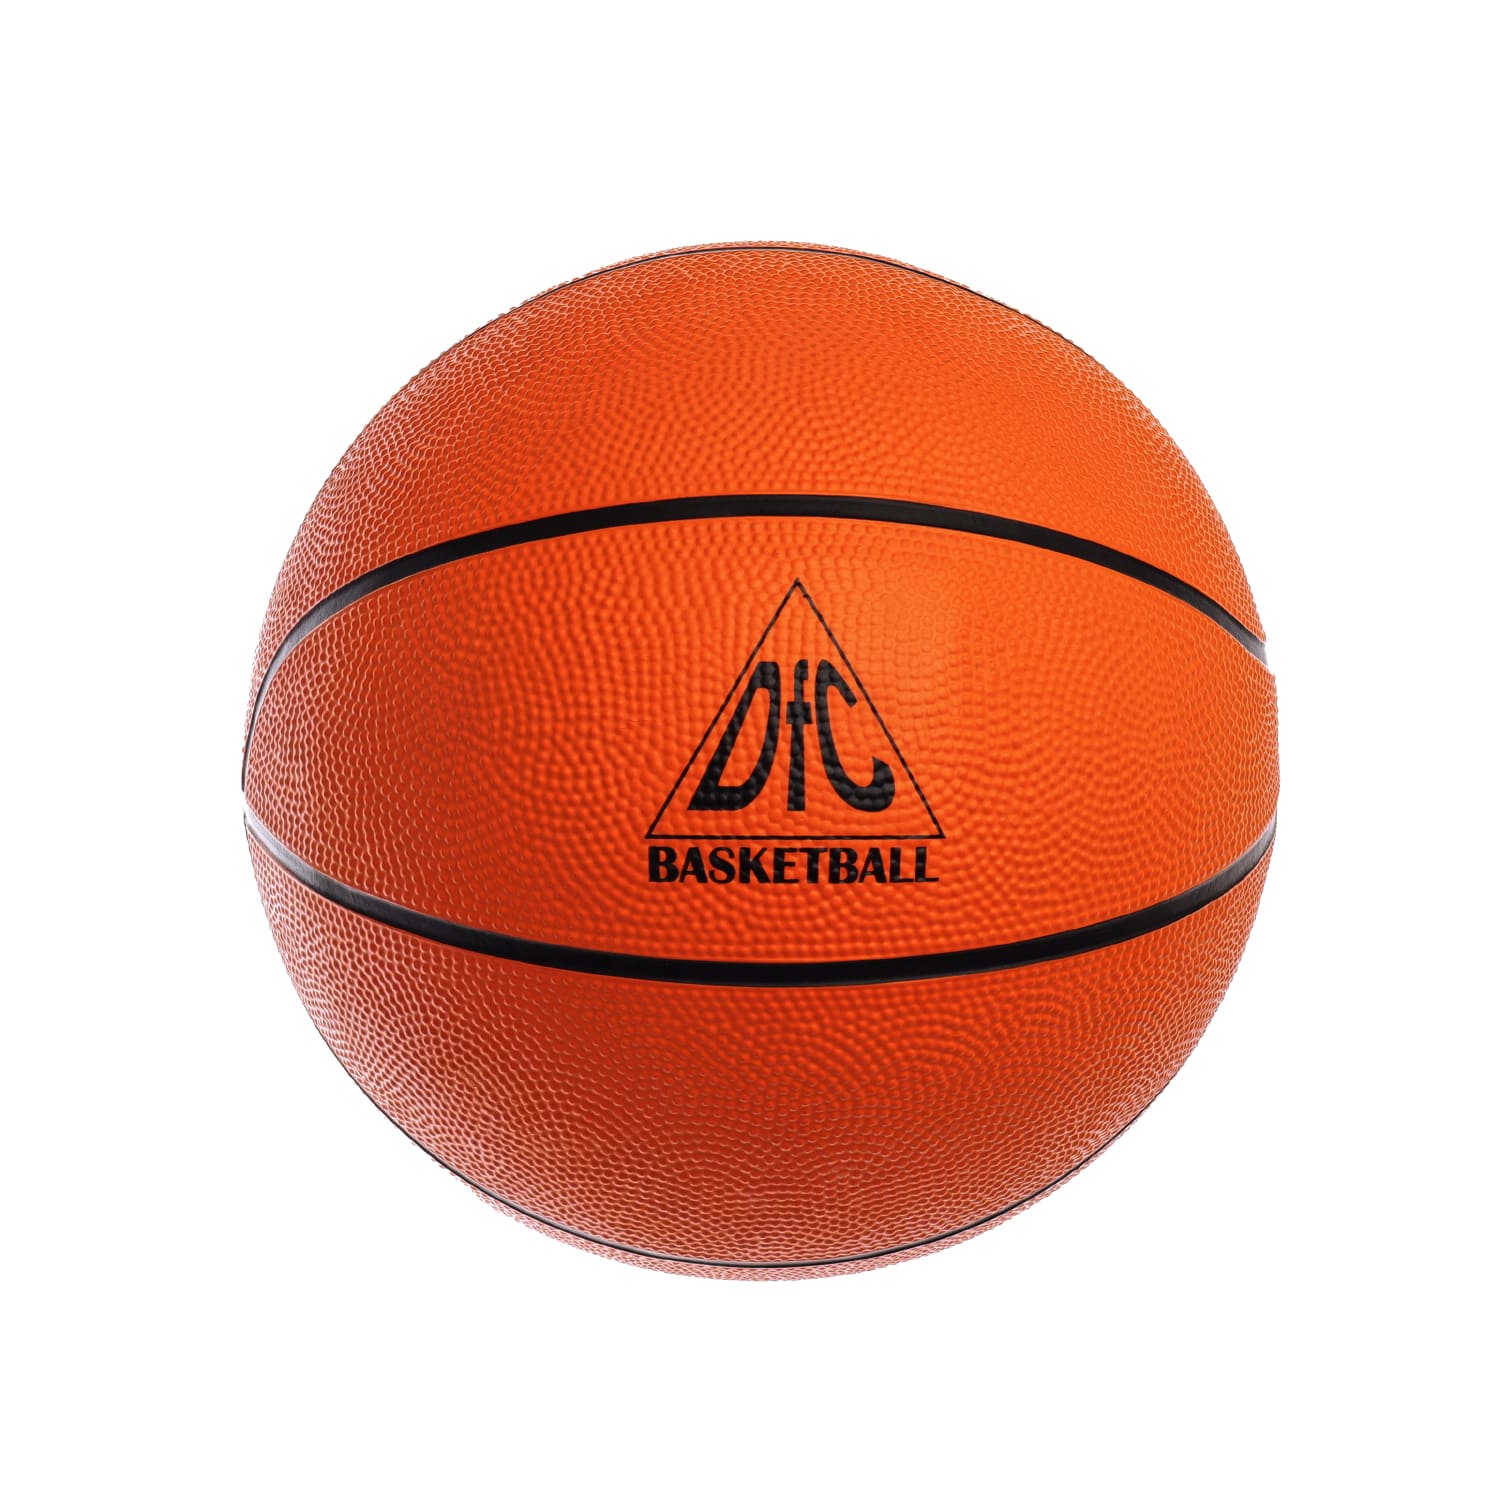 Где использовать баскетбольные мячи молтен?